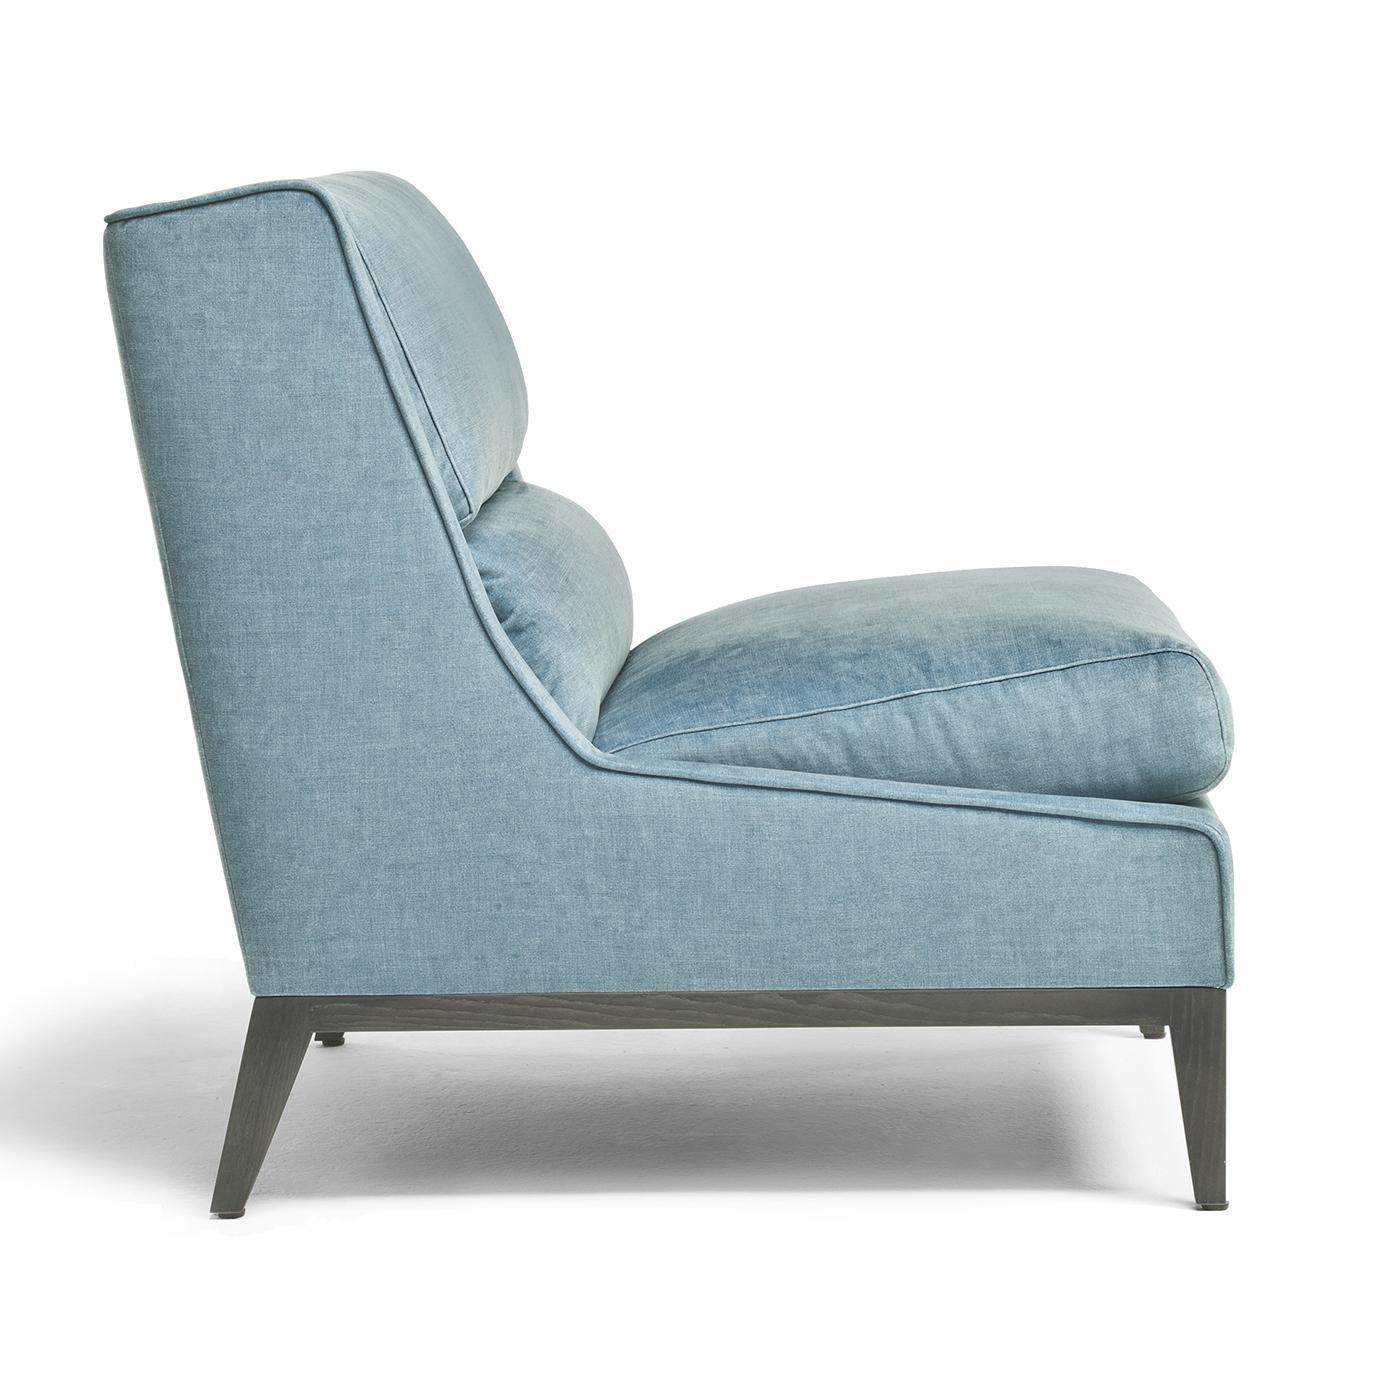 Der Overseas Armchair ist eine zeitgemäße Interpretation eines zeitlosen Must-haves. Er schafft eine coole Lounge-Umgebung und lädt zu gemütlichen Stunden der Entspannung ein. Der Stuhl steht auf einem offenporigen Eschenholzgestell mit